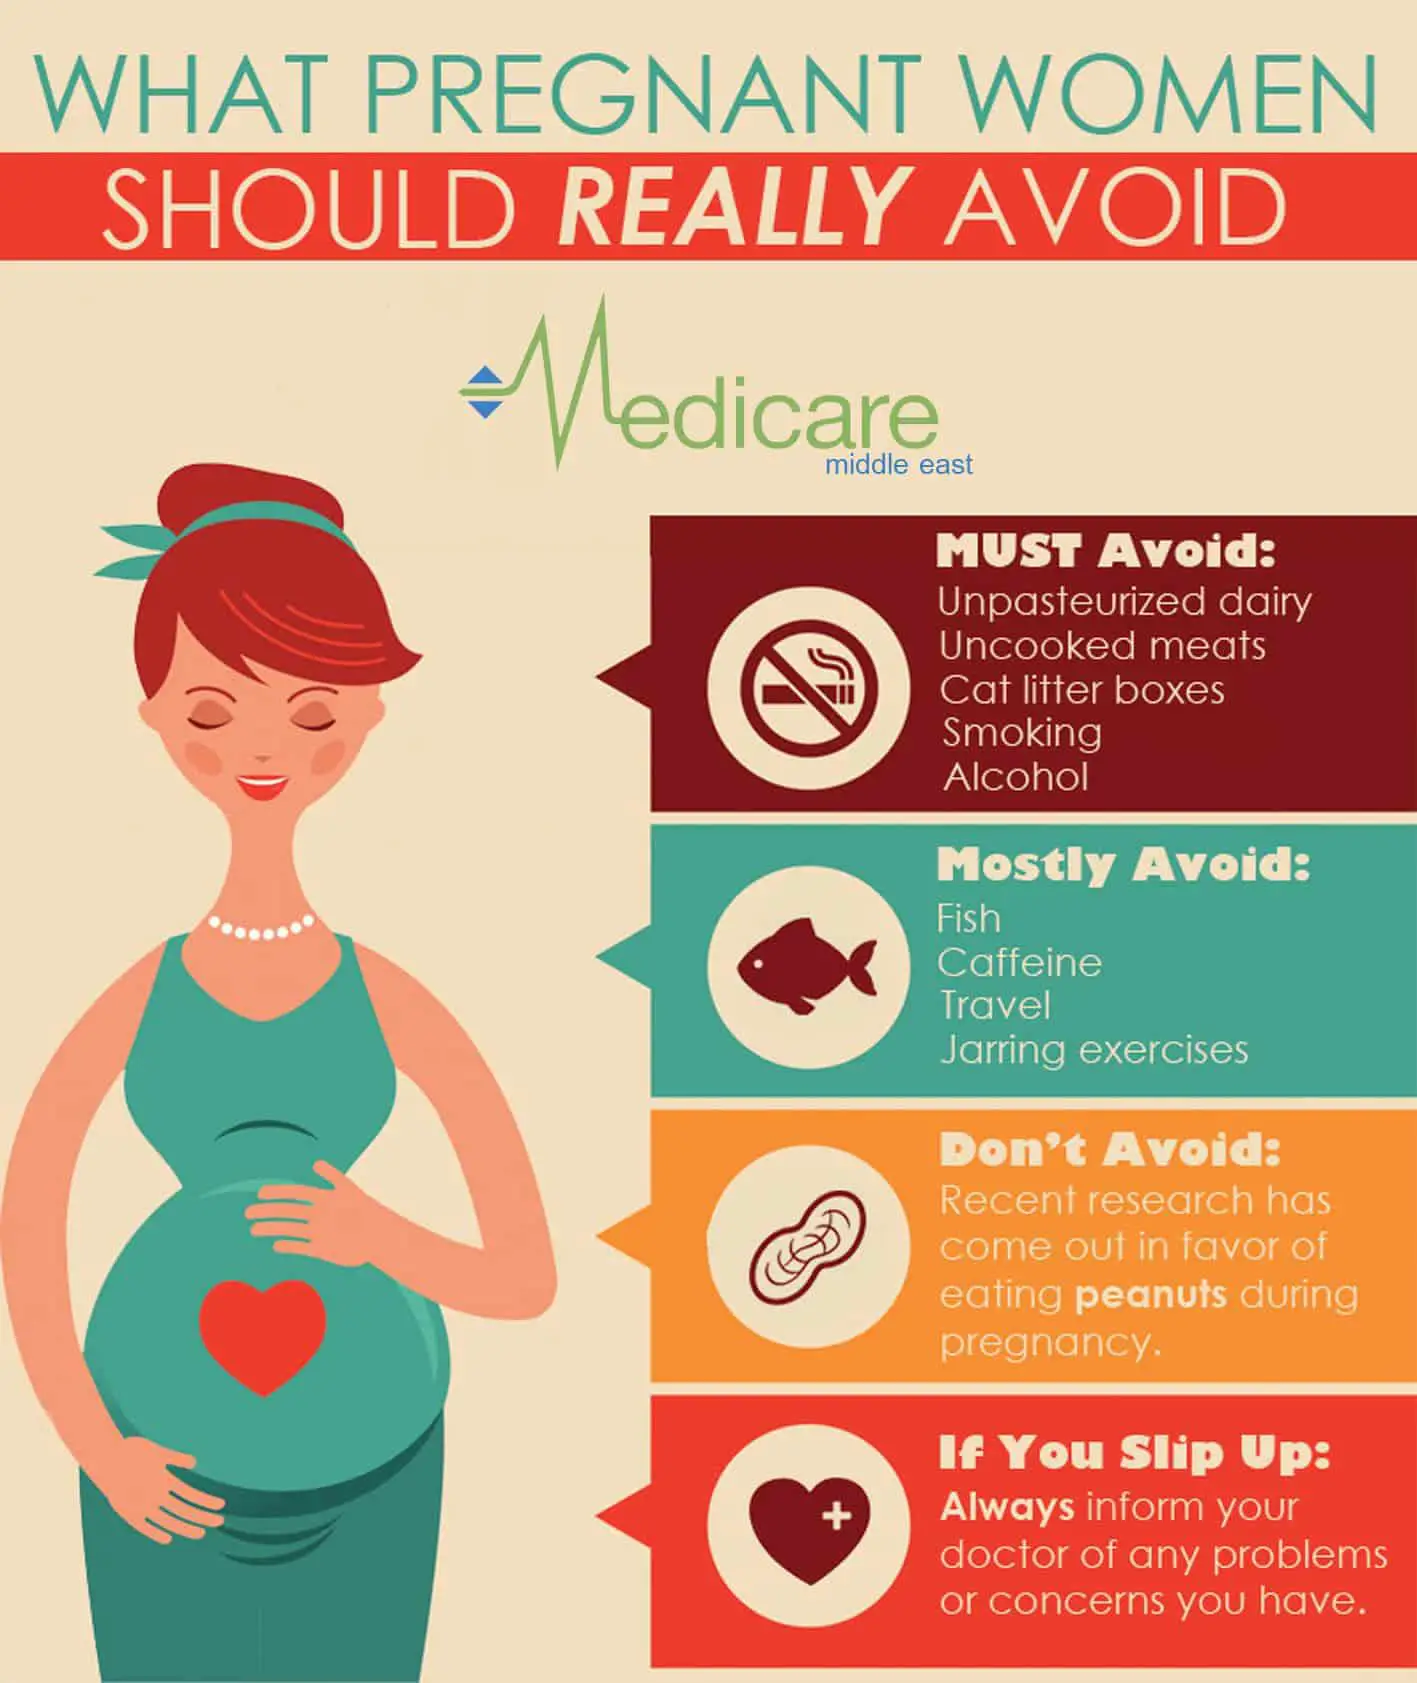 Best Health Insurance For Pregnant Women